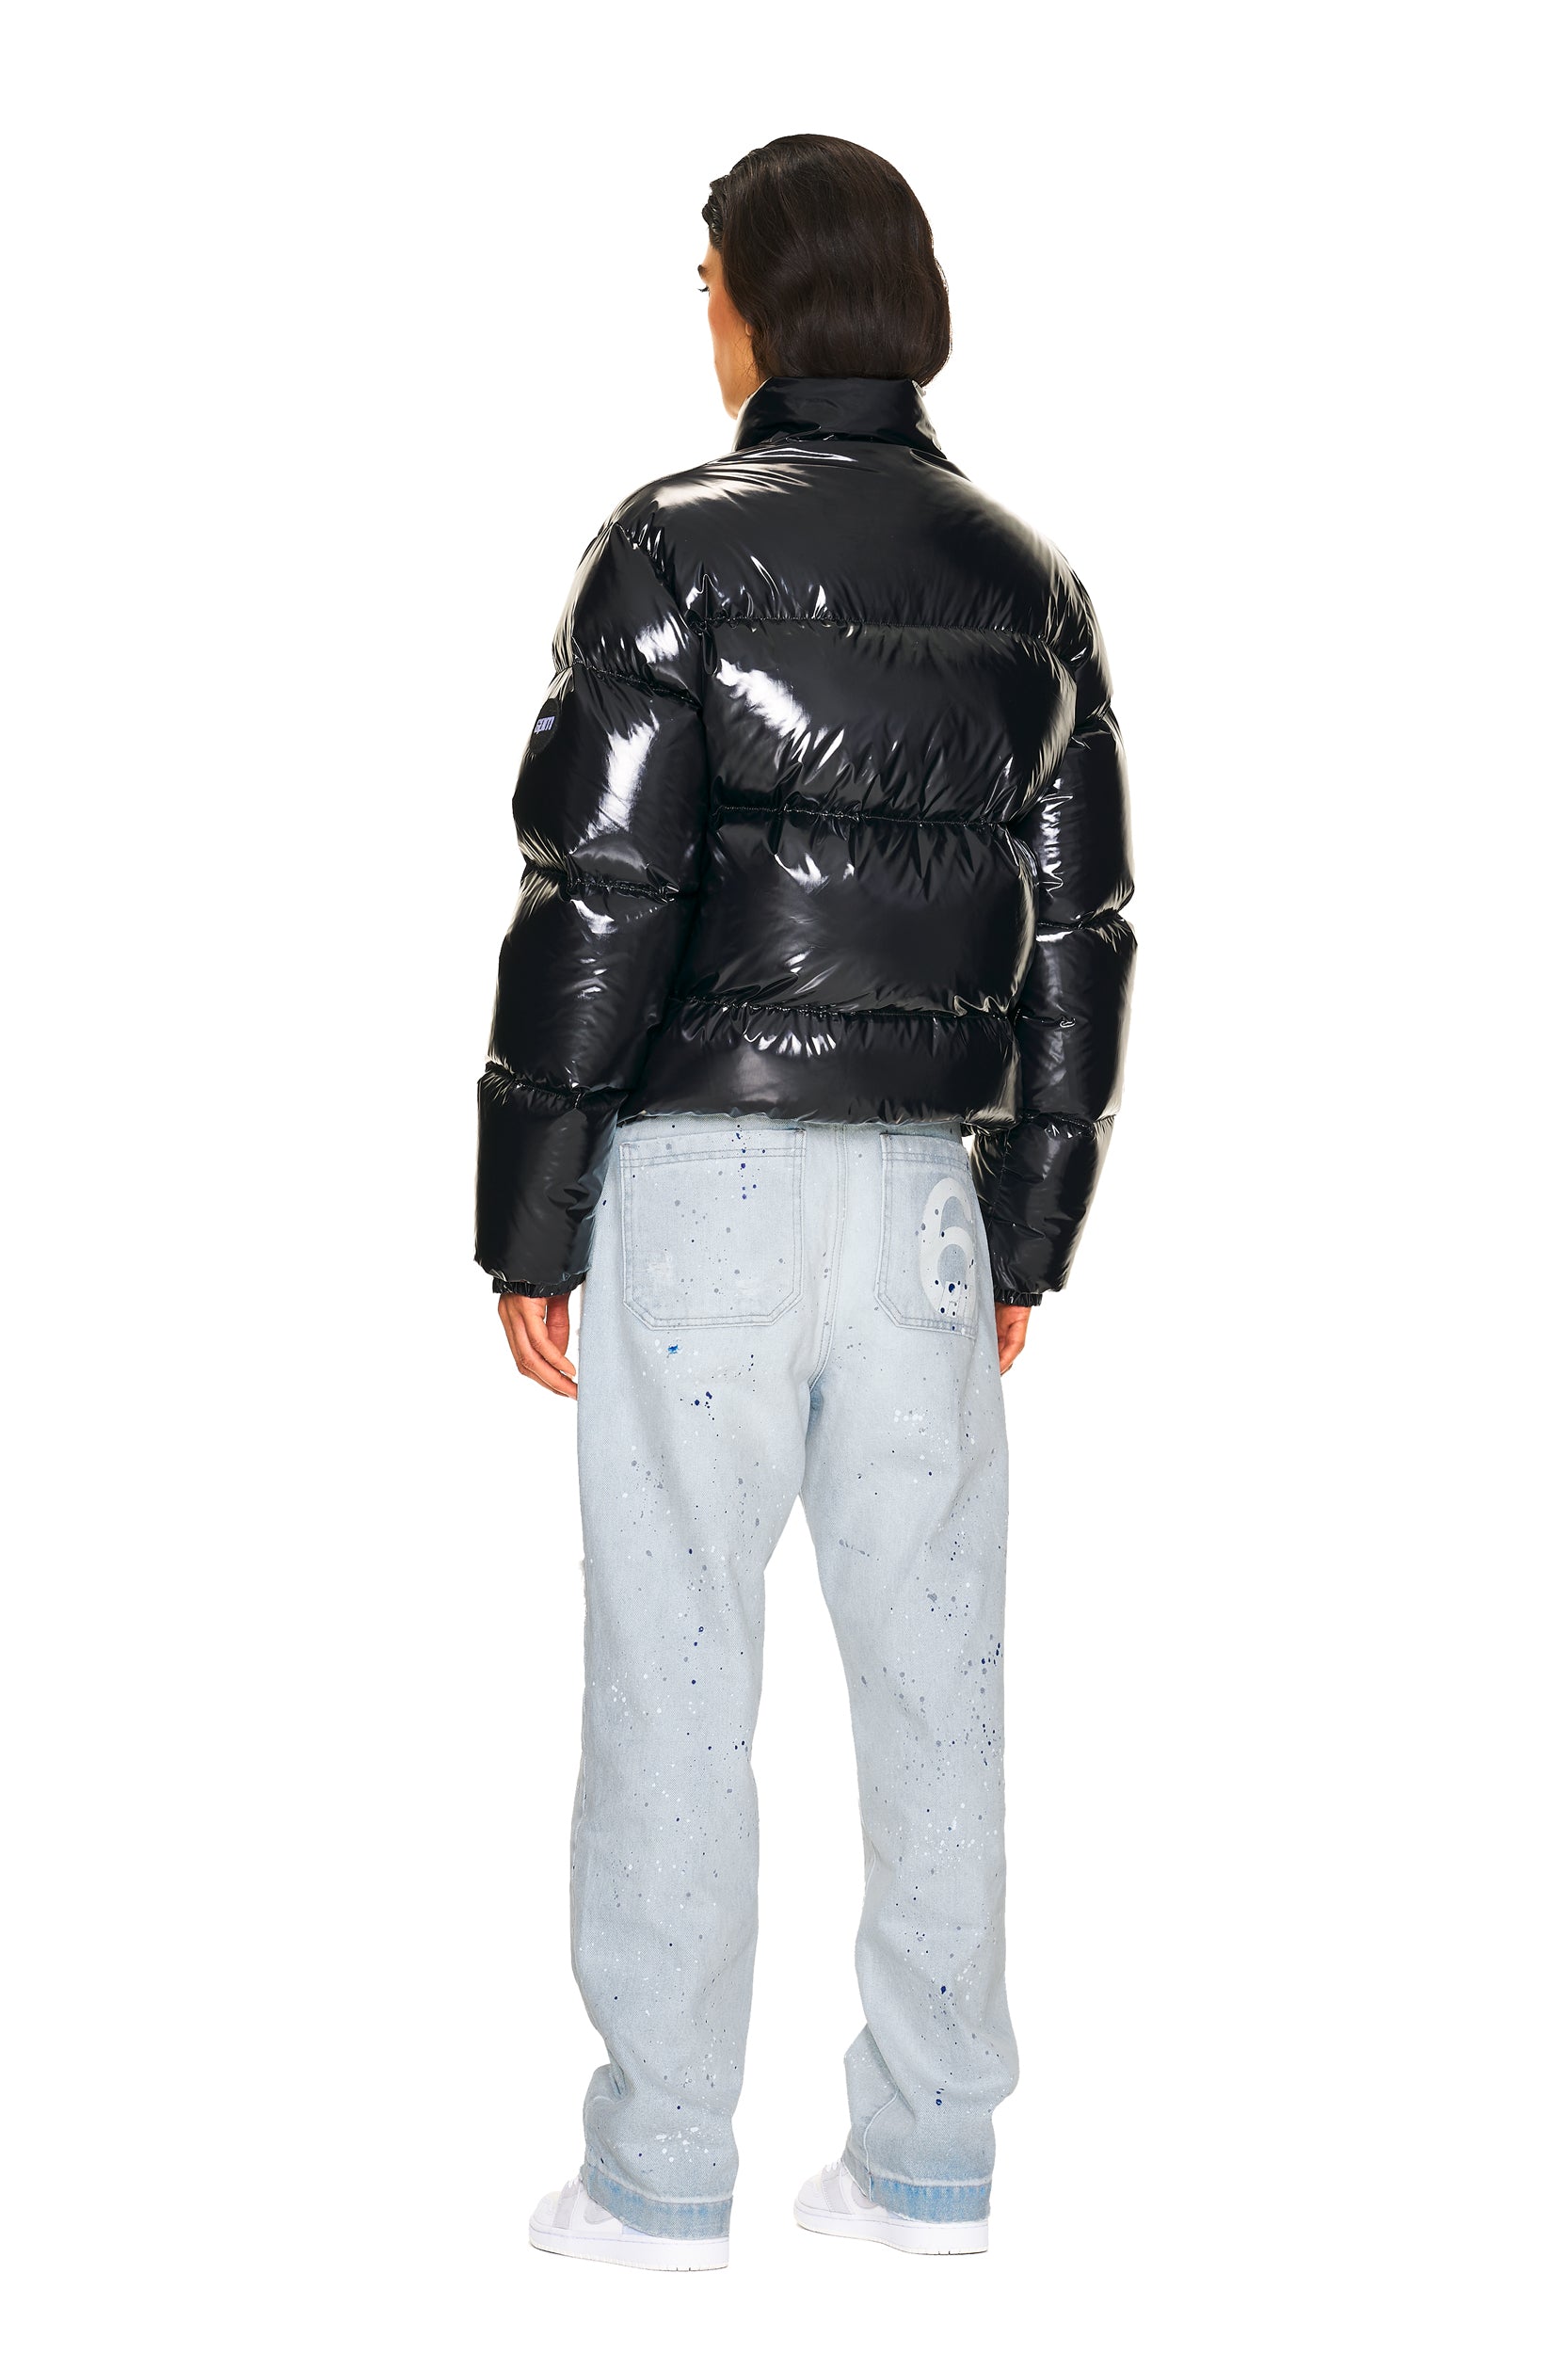 Men's Bulo Point™ II Hooded Down Puffer Jacket | Columbia Sportswear